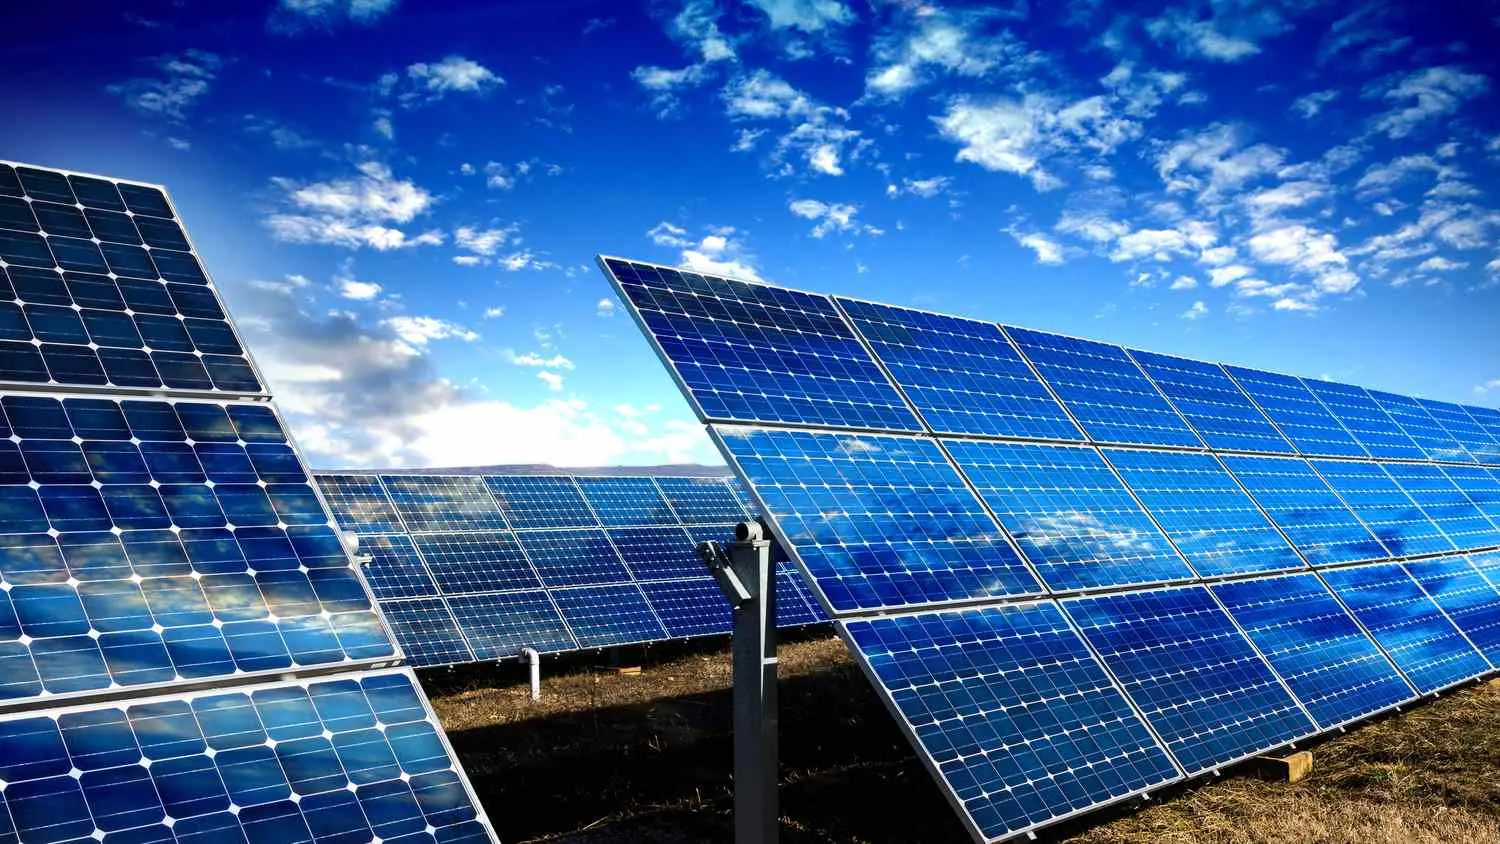 solar energy or solar power - Is it solar powered or solar powered